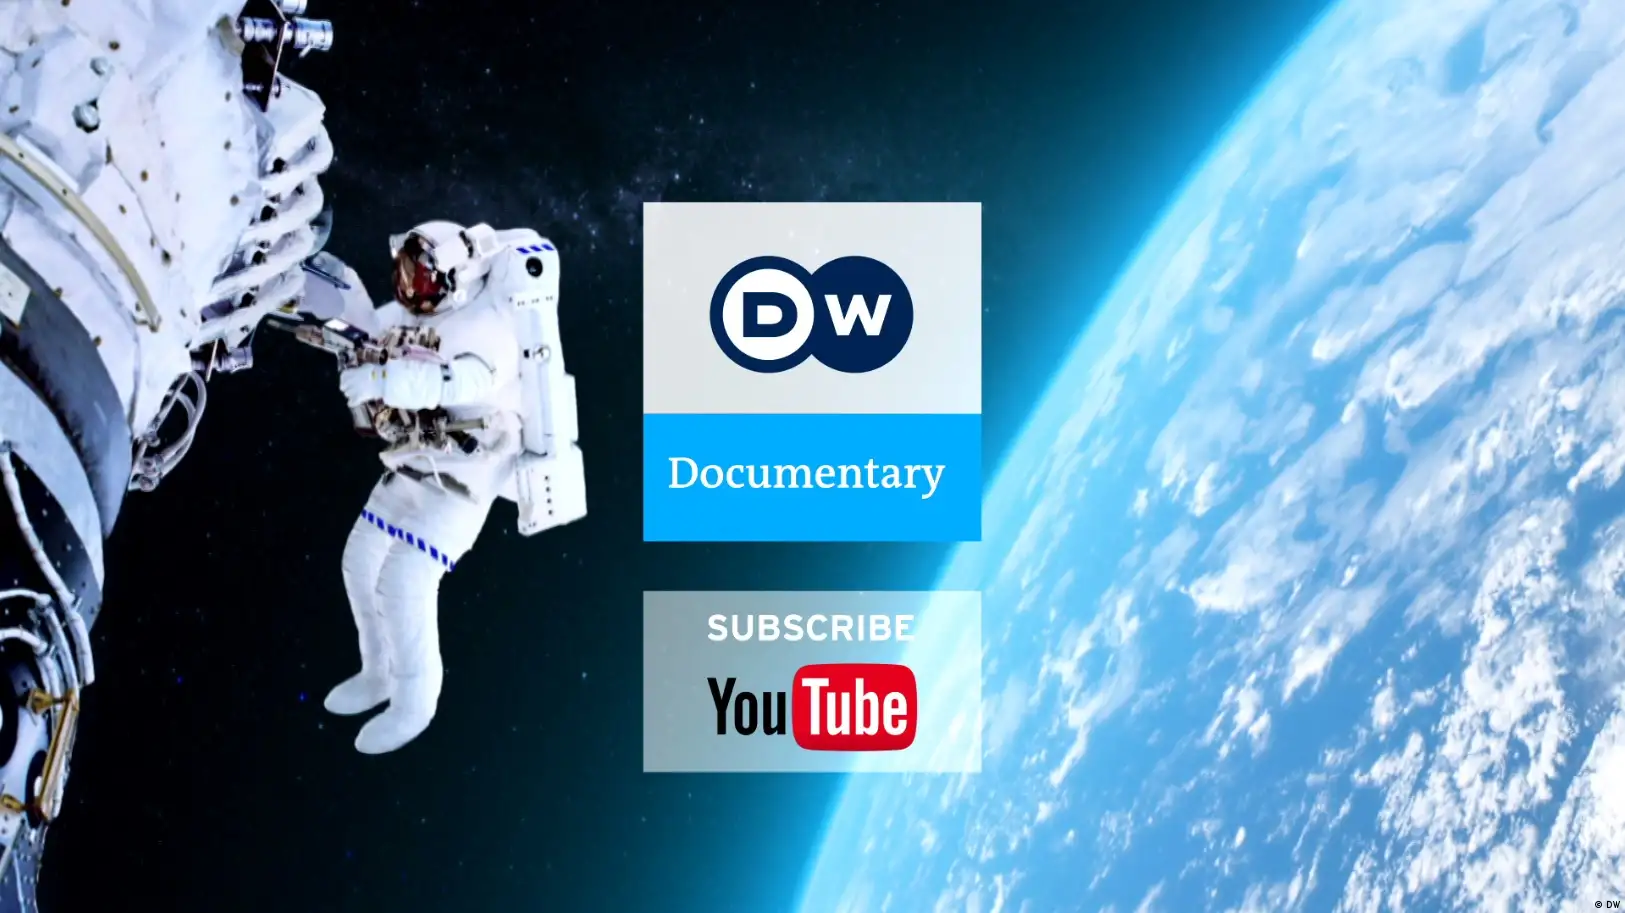 DW Documentary YouTube